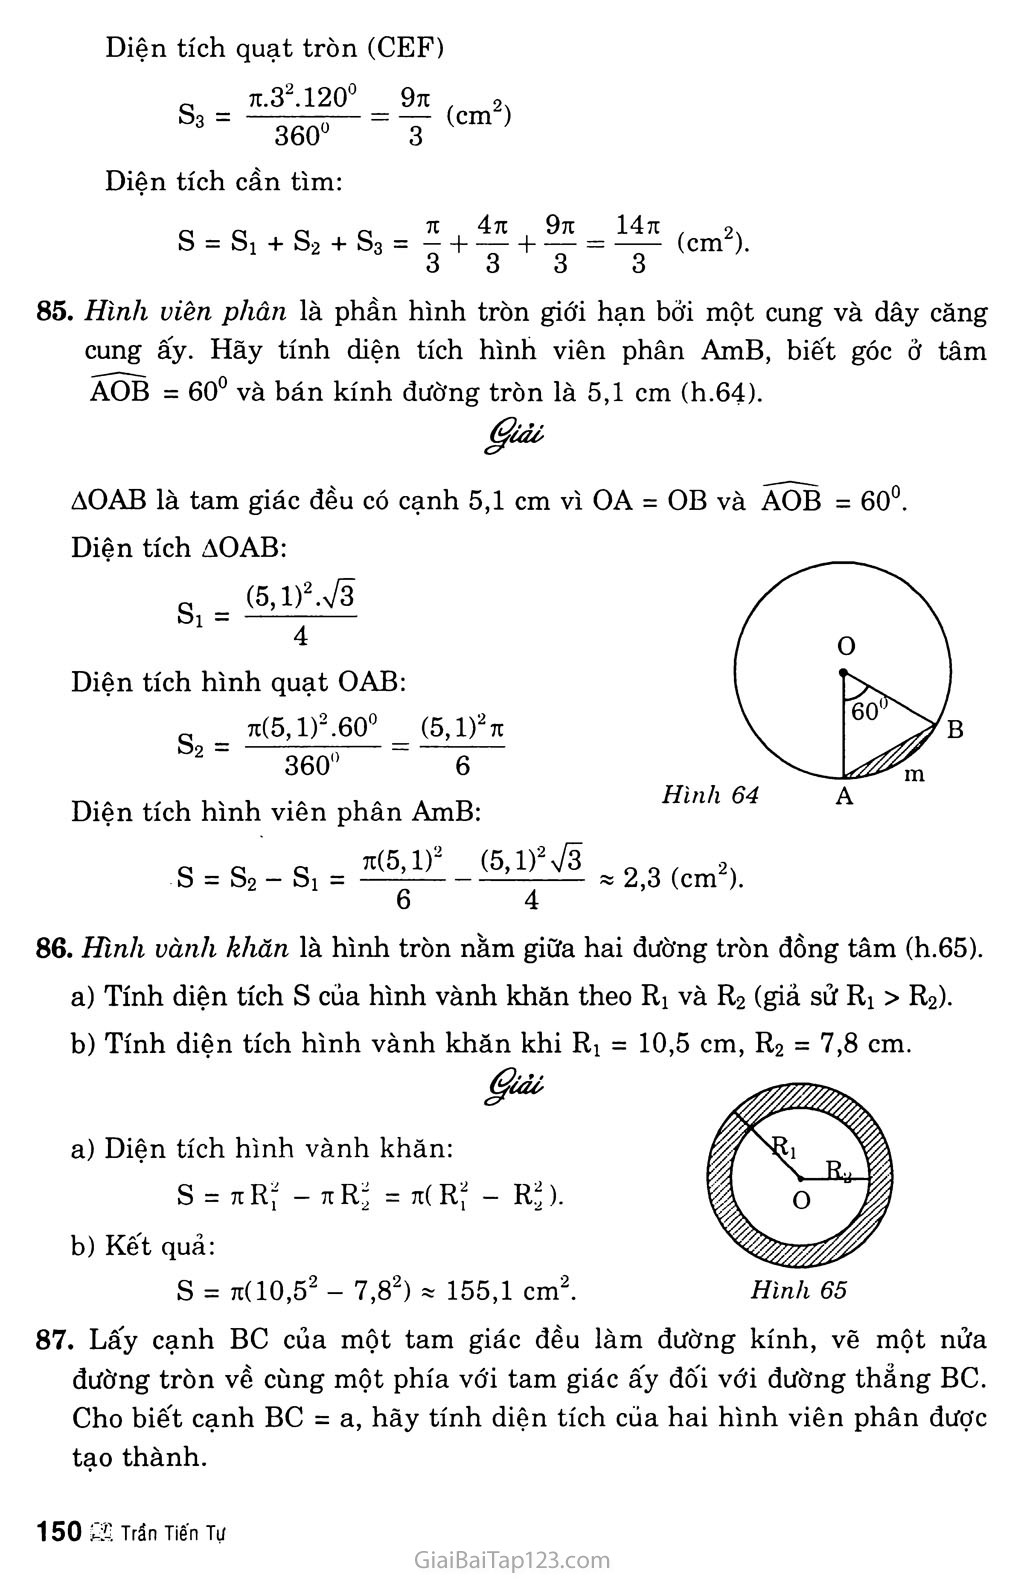 Giải bài tập Toán 9 Bài 10. Diện tích hình tròn, hình quạt tròn